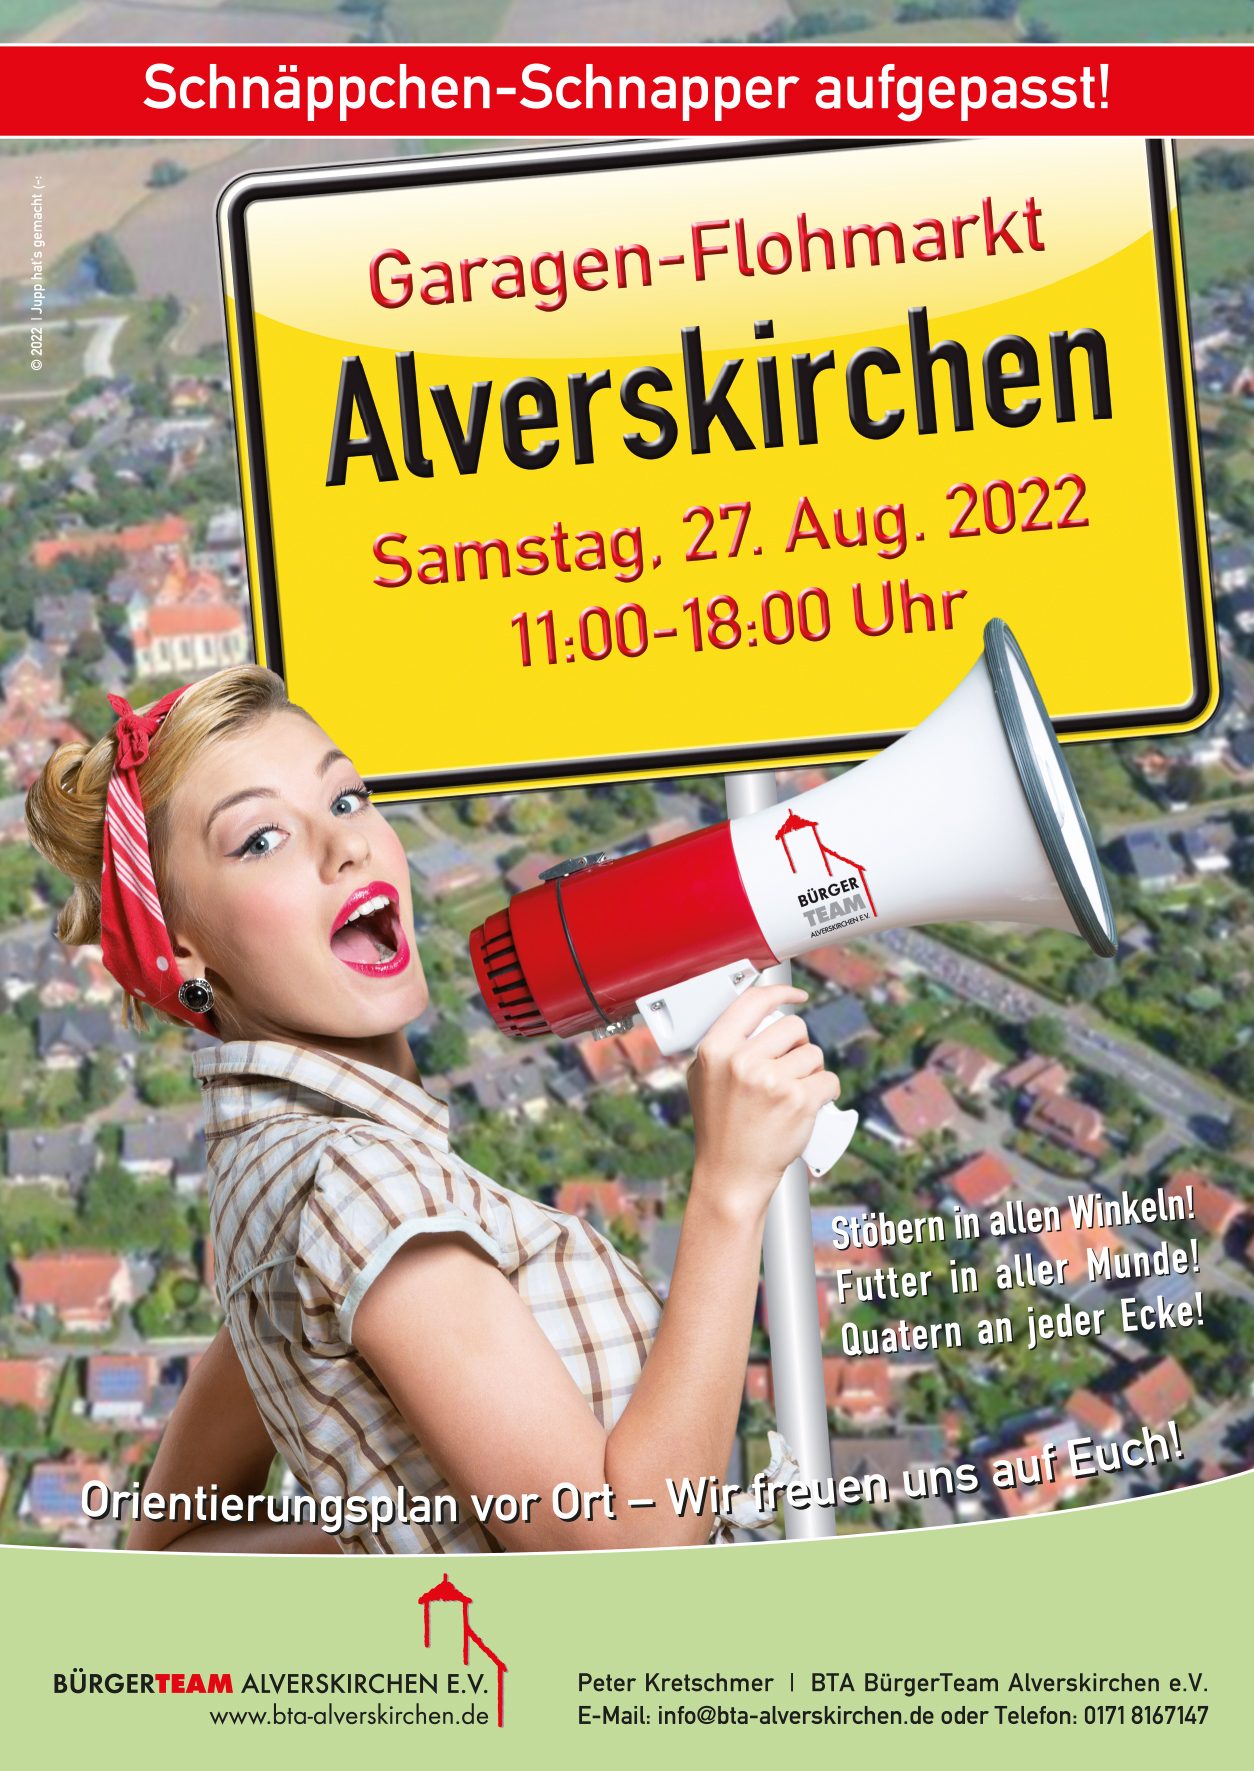 Alverskirchener Garagen-Flohmarkt am 27. August